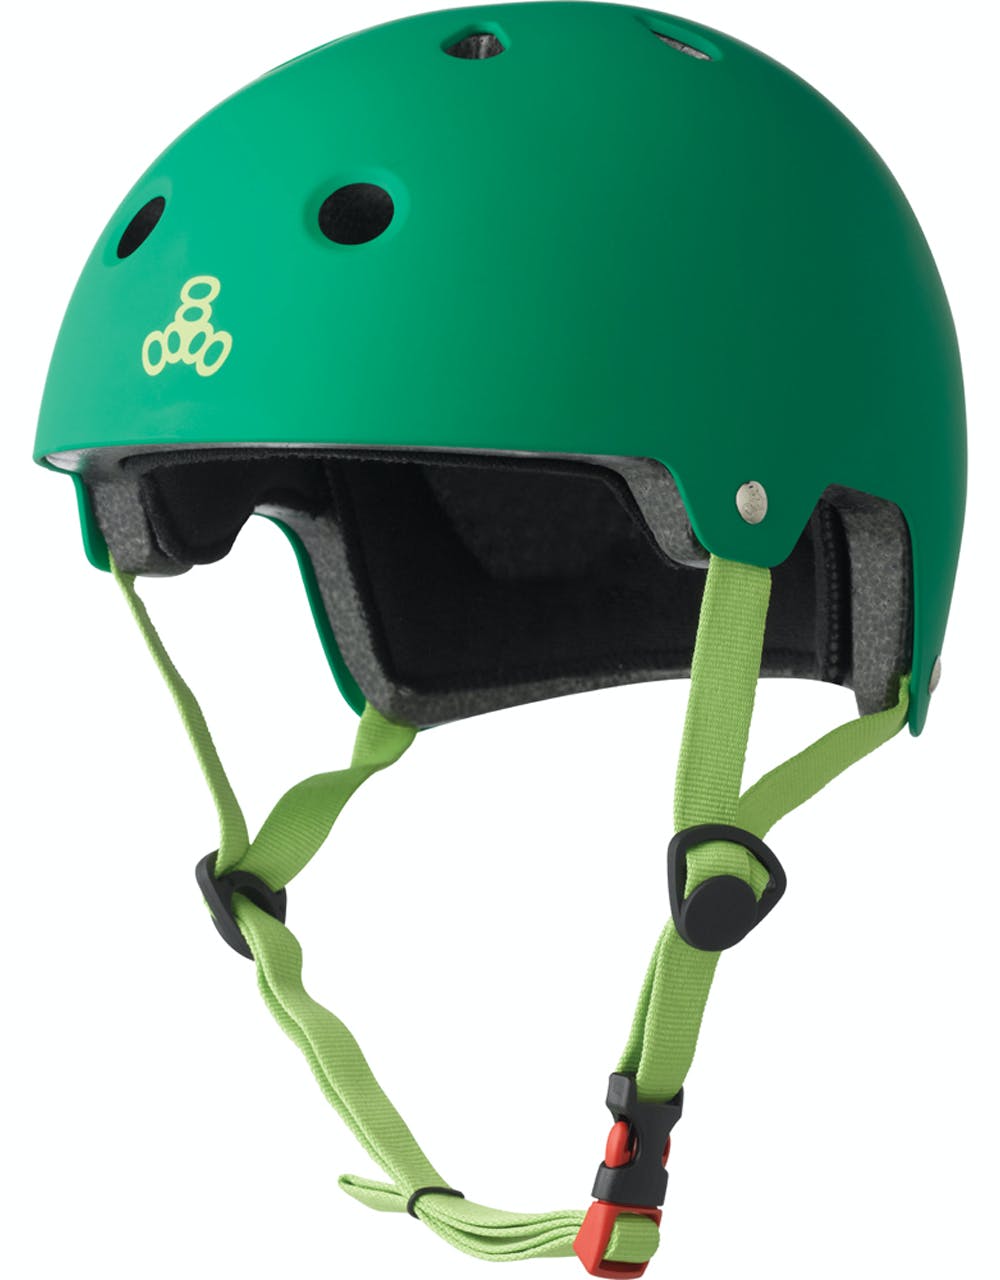 Triple 8 Brainsaver EPS Helmet - Kelly Green Rubber